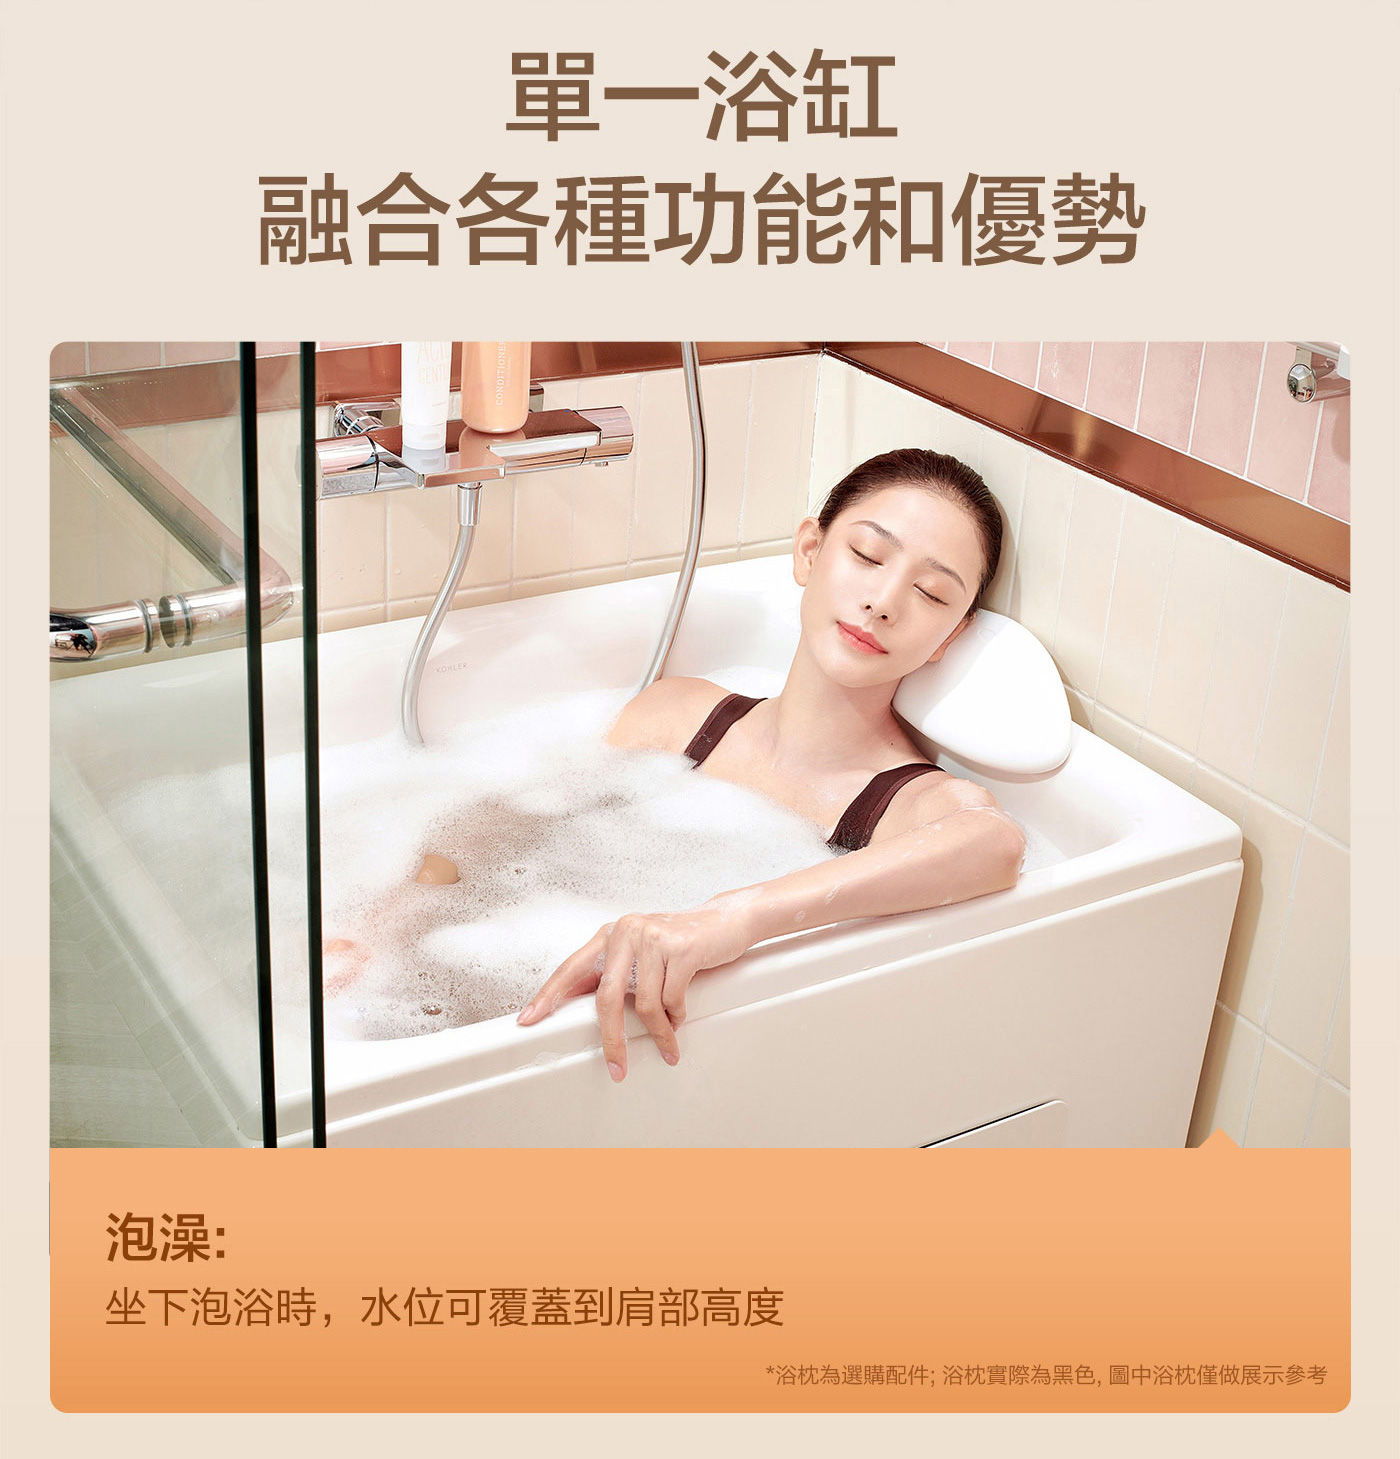 KOHLER 座臥式浴缸左角位單一浴缸融合各種功能和優勢